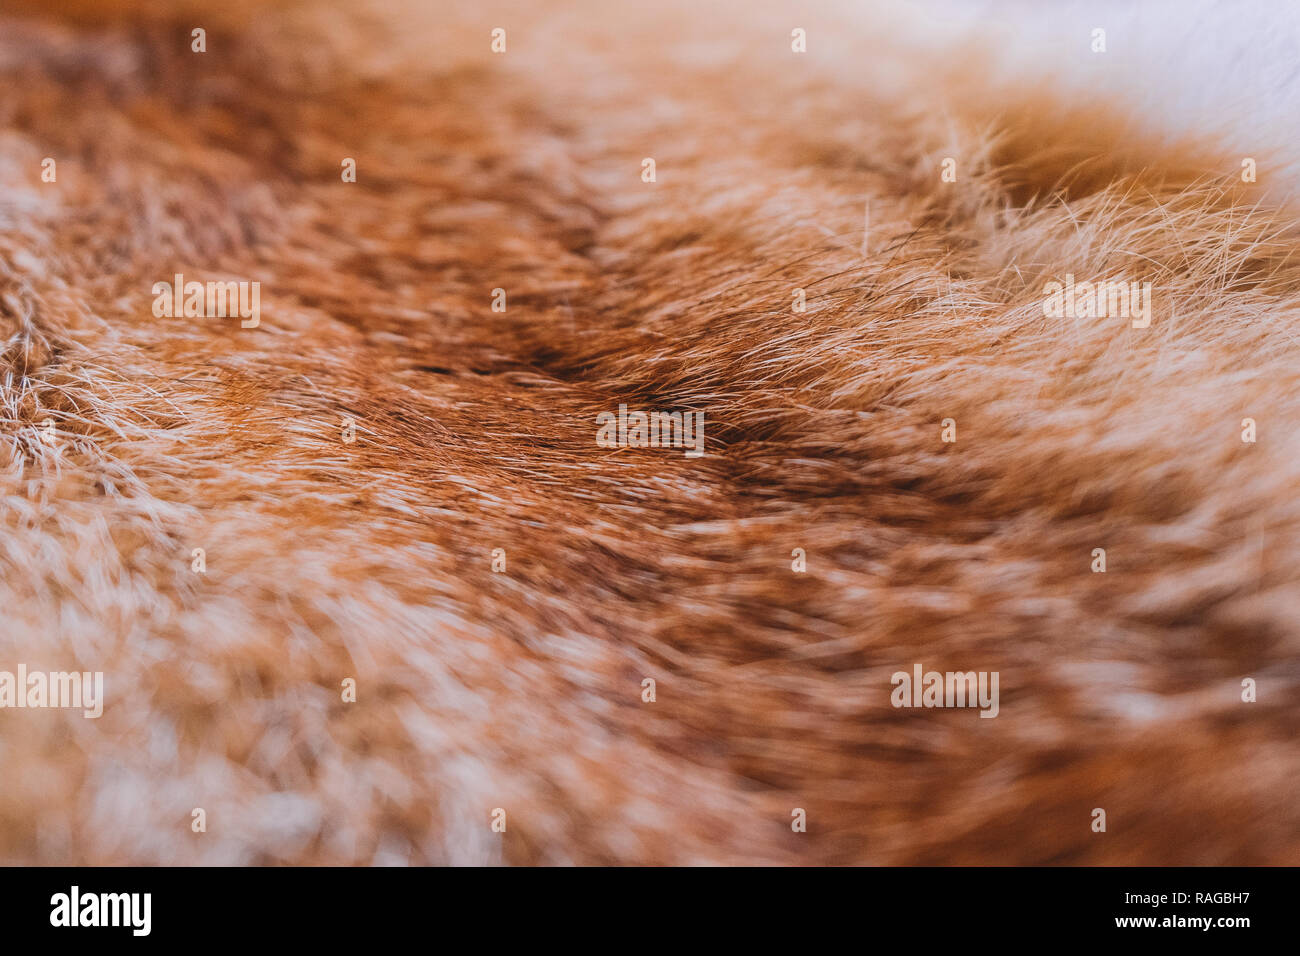 Primo piano vista superiore della consistenza soffice di coloratissimi real fox pelo di animali. In pelliccia naturale dello sfondo. Orizzontale della fotografia a colori Foto Stock